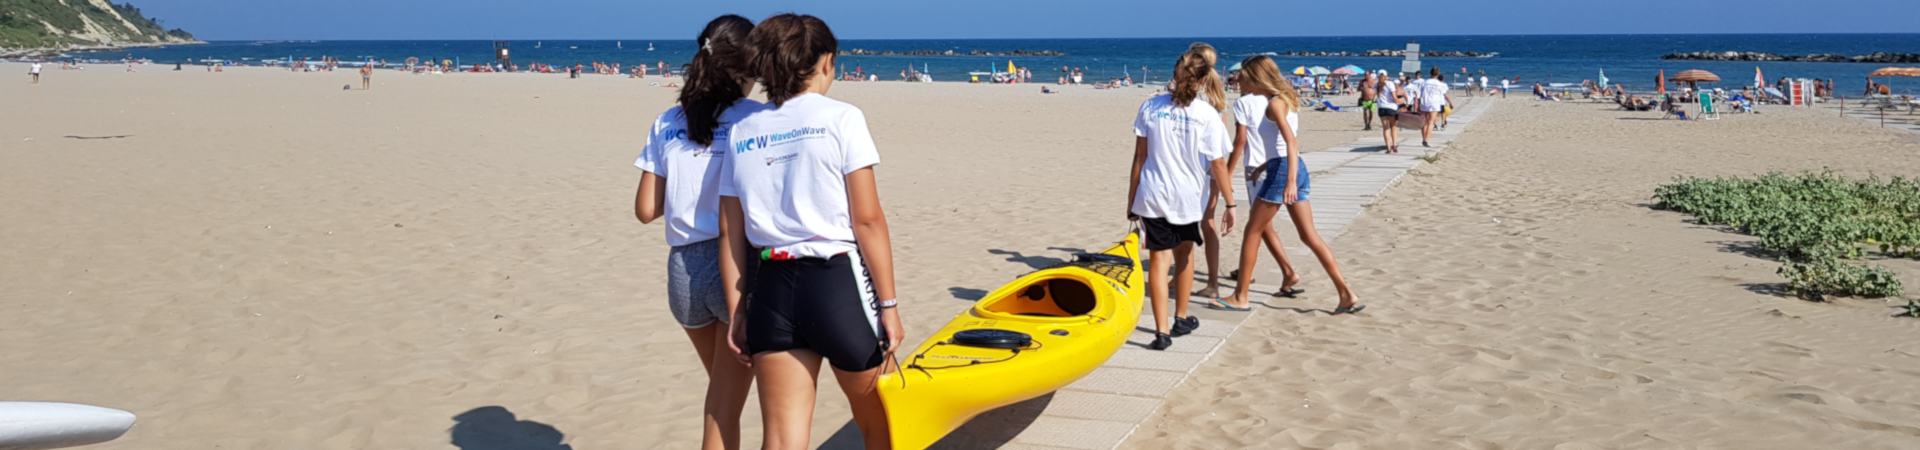 foto di ragazze sulla spiaggia di Pesaro che trasportano una canoa in acqua